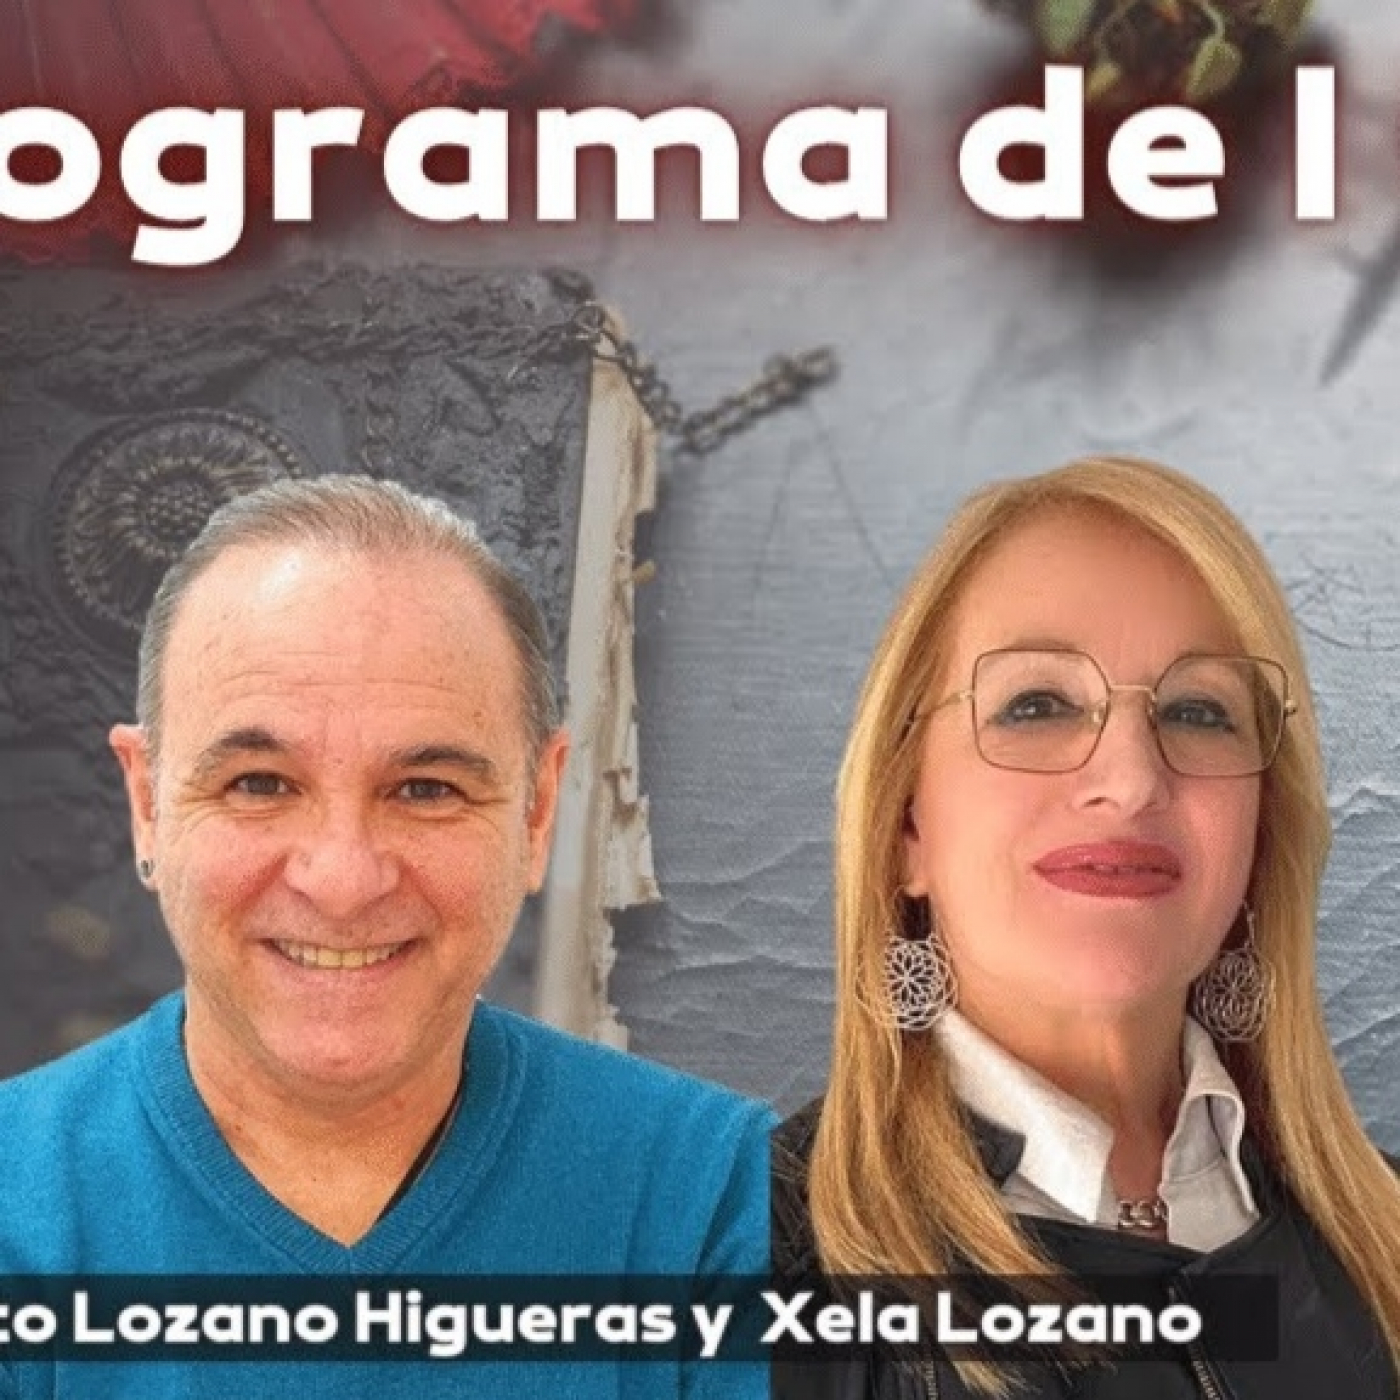 Programa de Consultas con Alberto Lozano Higueras y Xela Lozano